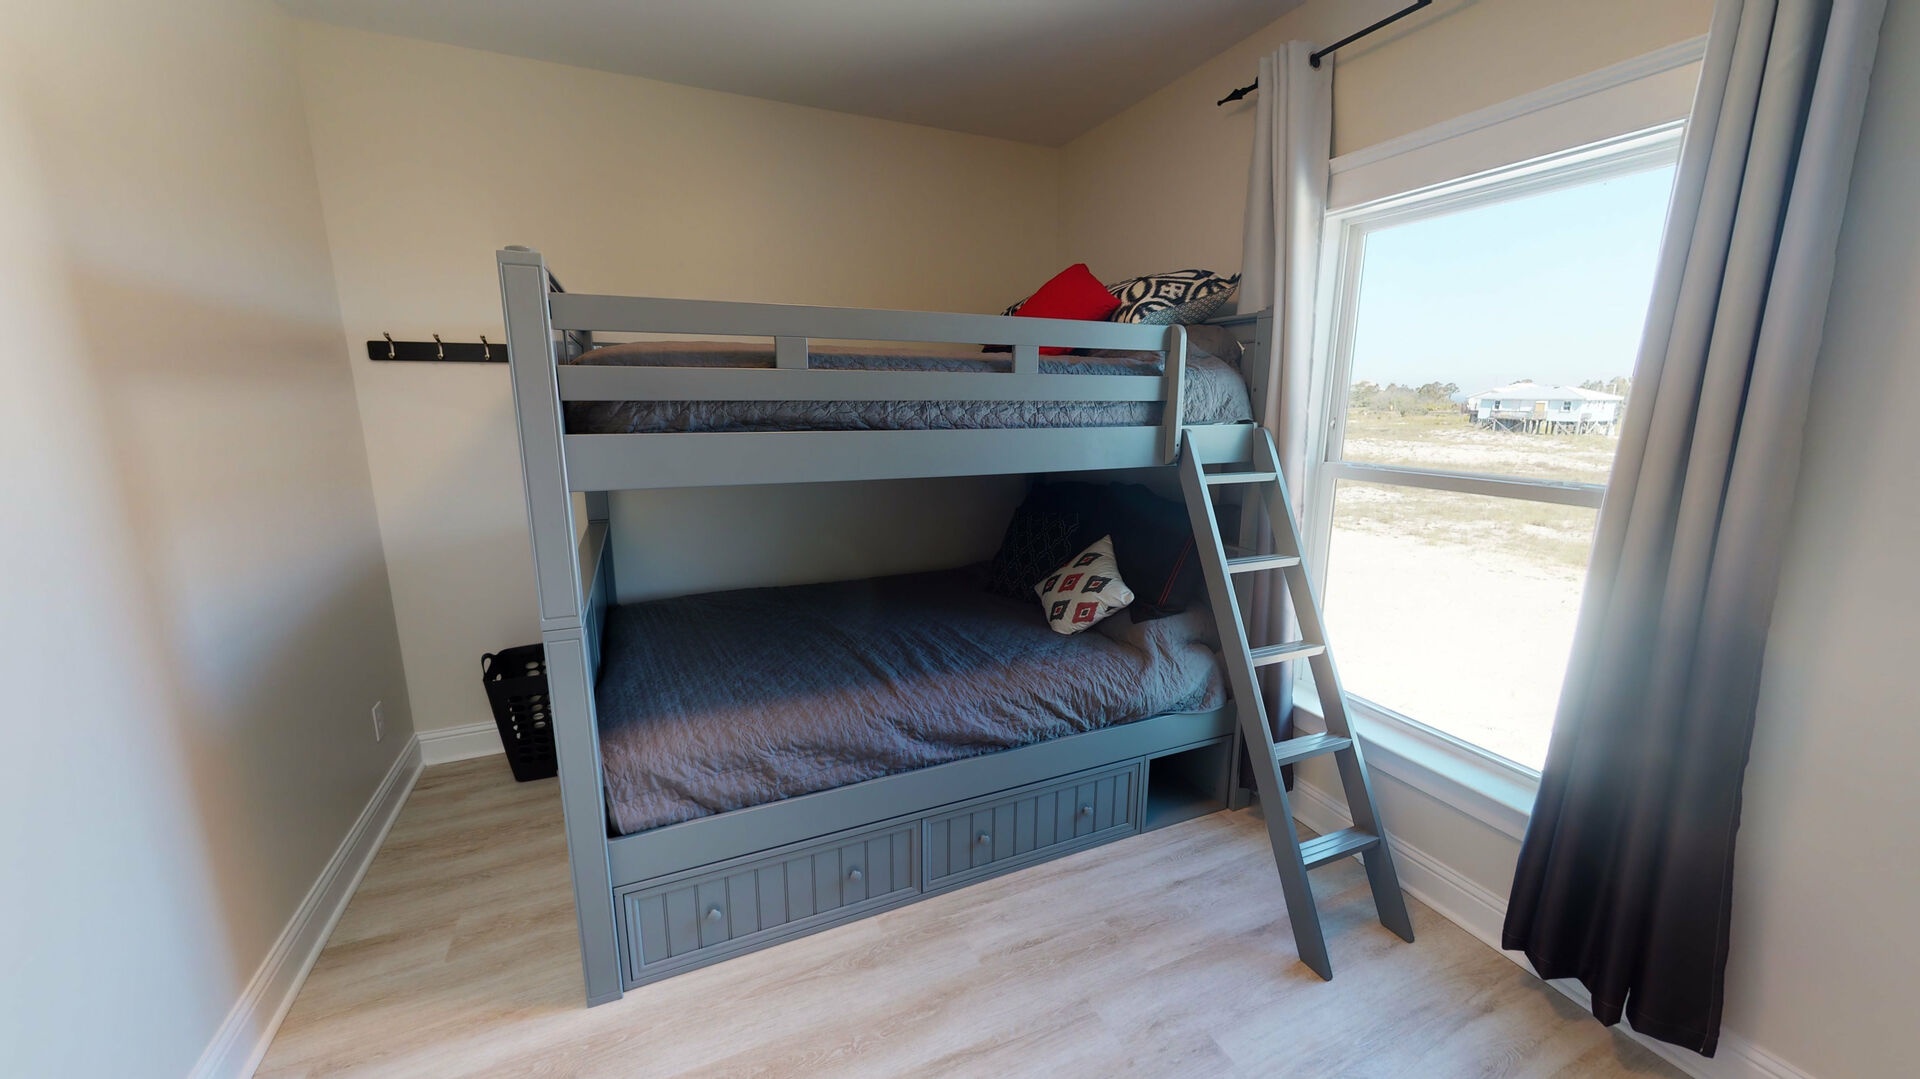 Bedroom 4 features 2 queen bunk beds - sleeps 4